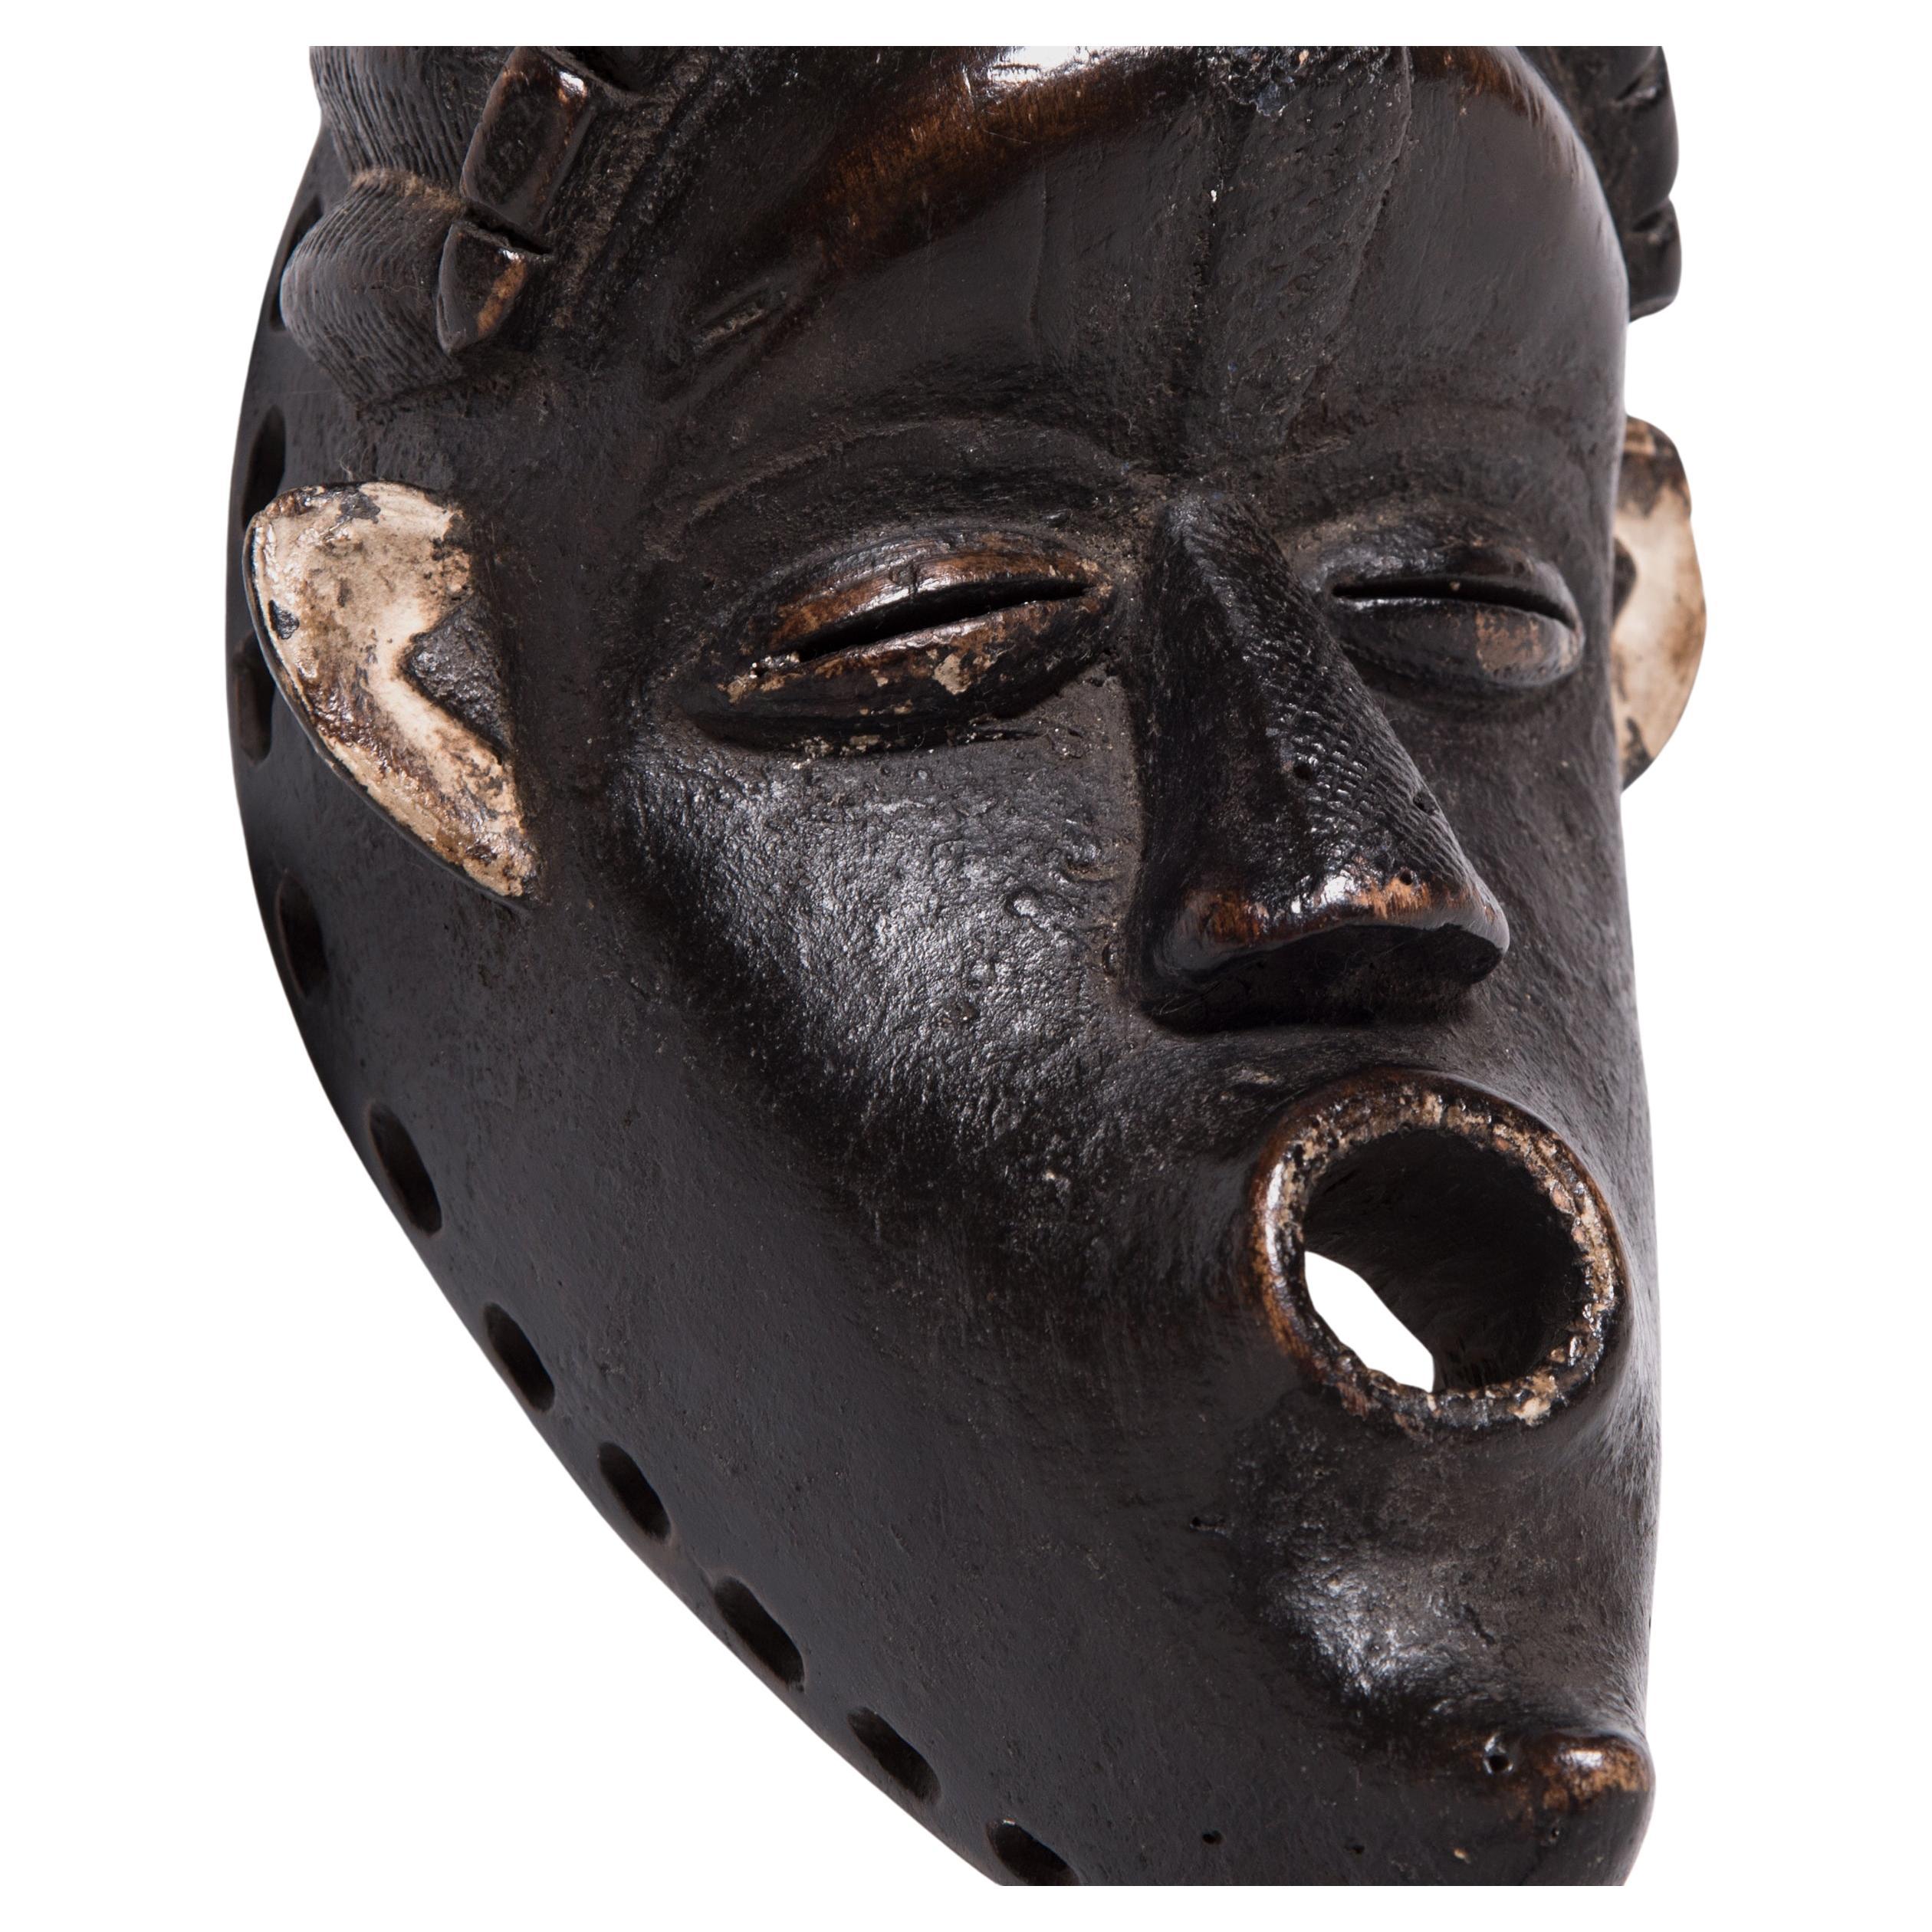 Recouvert d'une extraordinaire patine noire croûteuse, ce masque libérien en bois a été fabriqué à la main dans le style de l'ethnie Bassa. Les communautés Bassa ont de nombreuses et riches traditions en matière de masques. Parmi ceux-ci, on peut